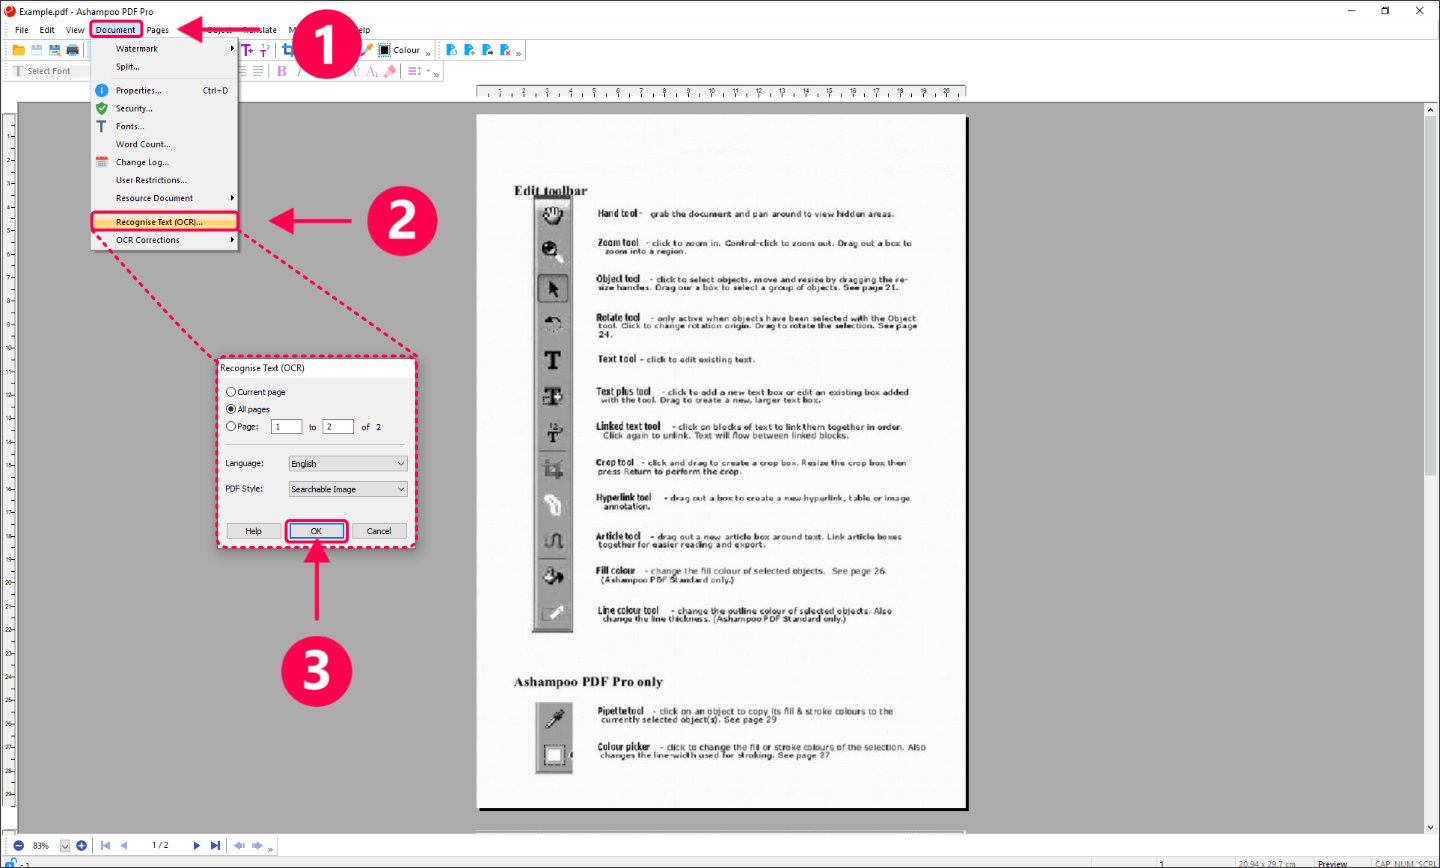 Ashampoo PDF Pro 3 Key (Lifetime / 1 PC) [$ 11.73]